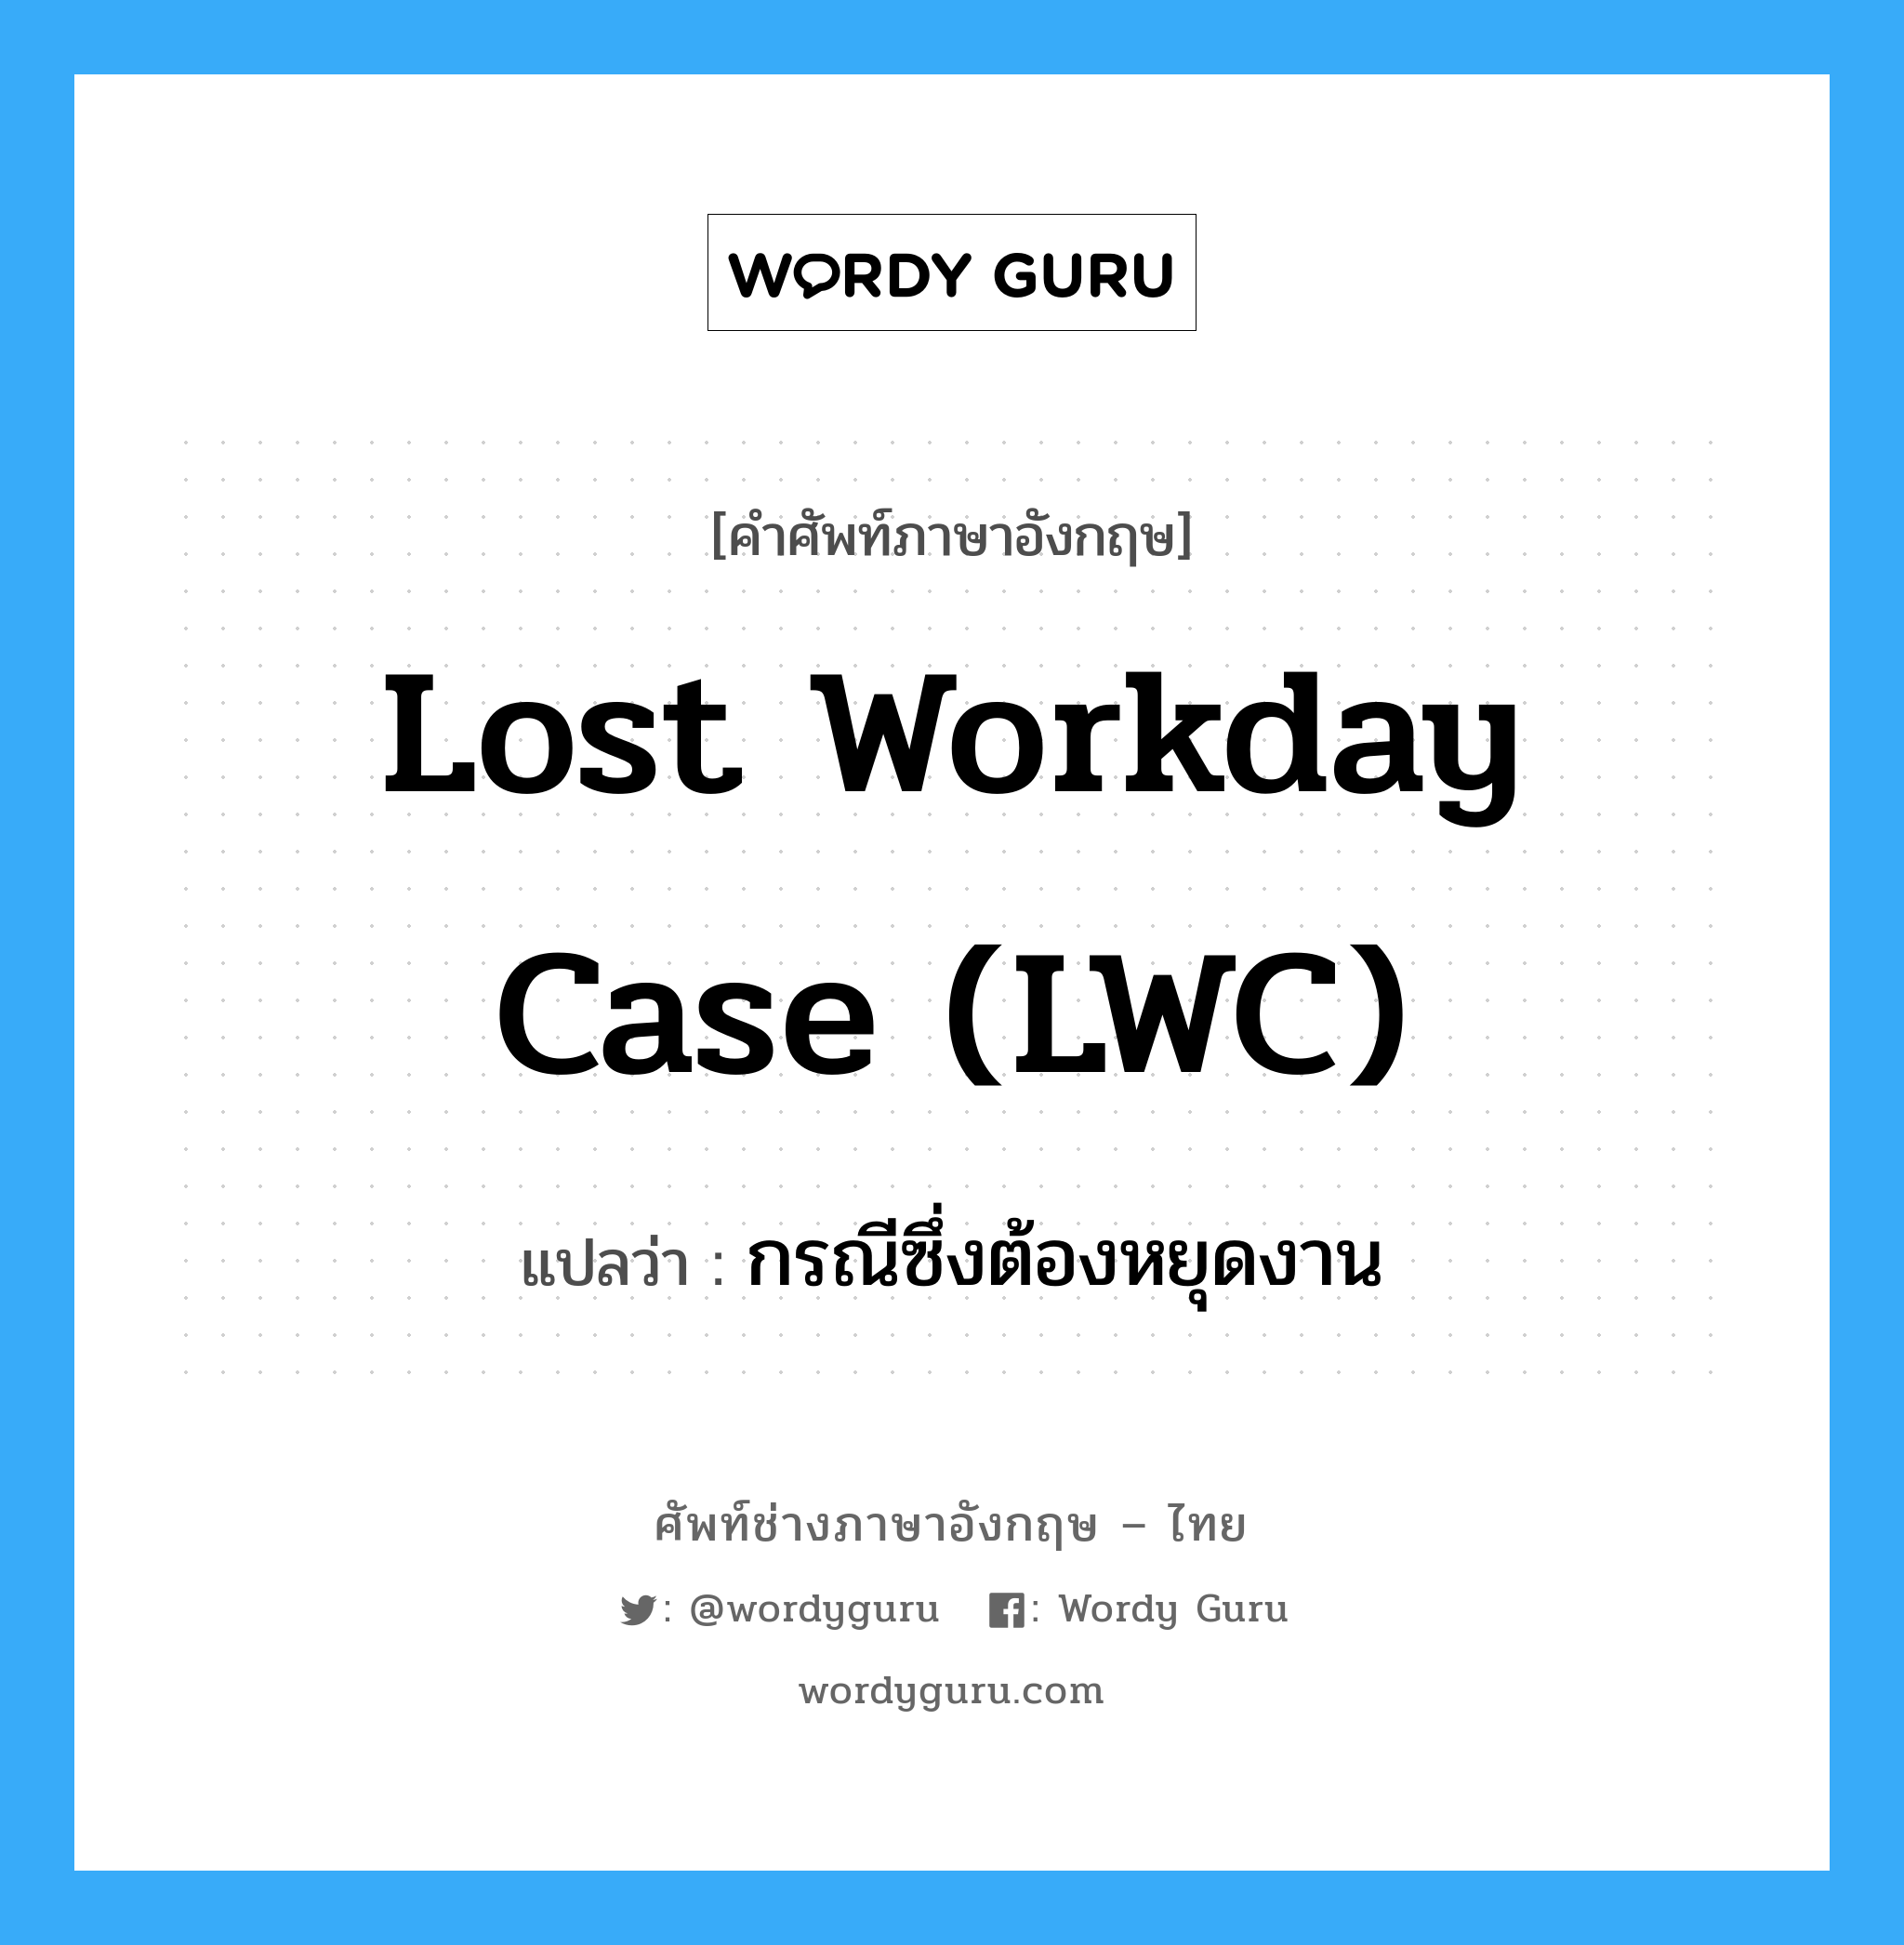 กรณีซึ่งต้องหยุดงาน ภาษาอังกฤษ?, คำศัพท์ช่างภาษาอังกฤษ - ไทย กรณีซึ่งต้องหยุดงาน คำศัพท์ภาษาอังกฤษ กรณีซึ่งต้องหยุดงาน แปลว่า Lost Workday Case (LWC)